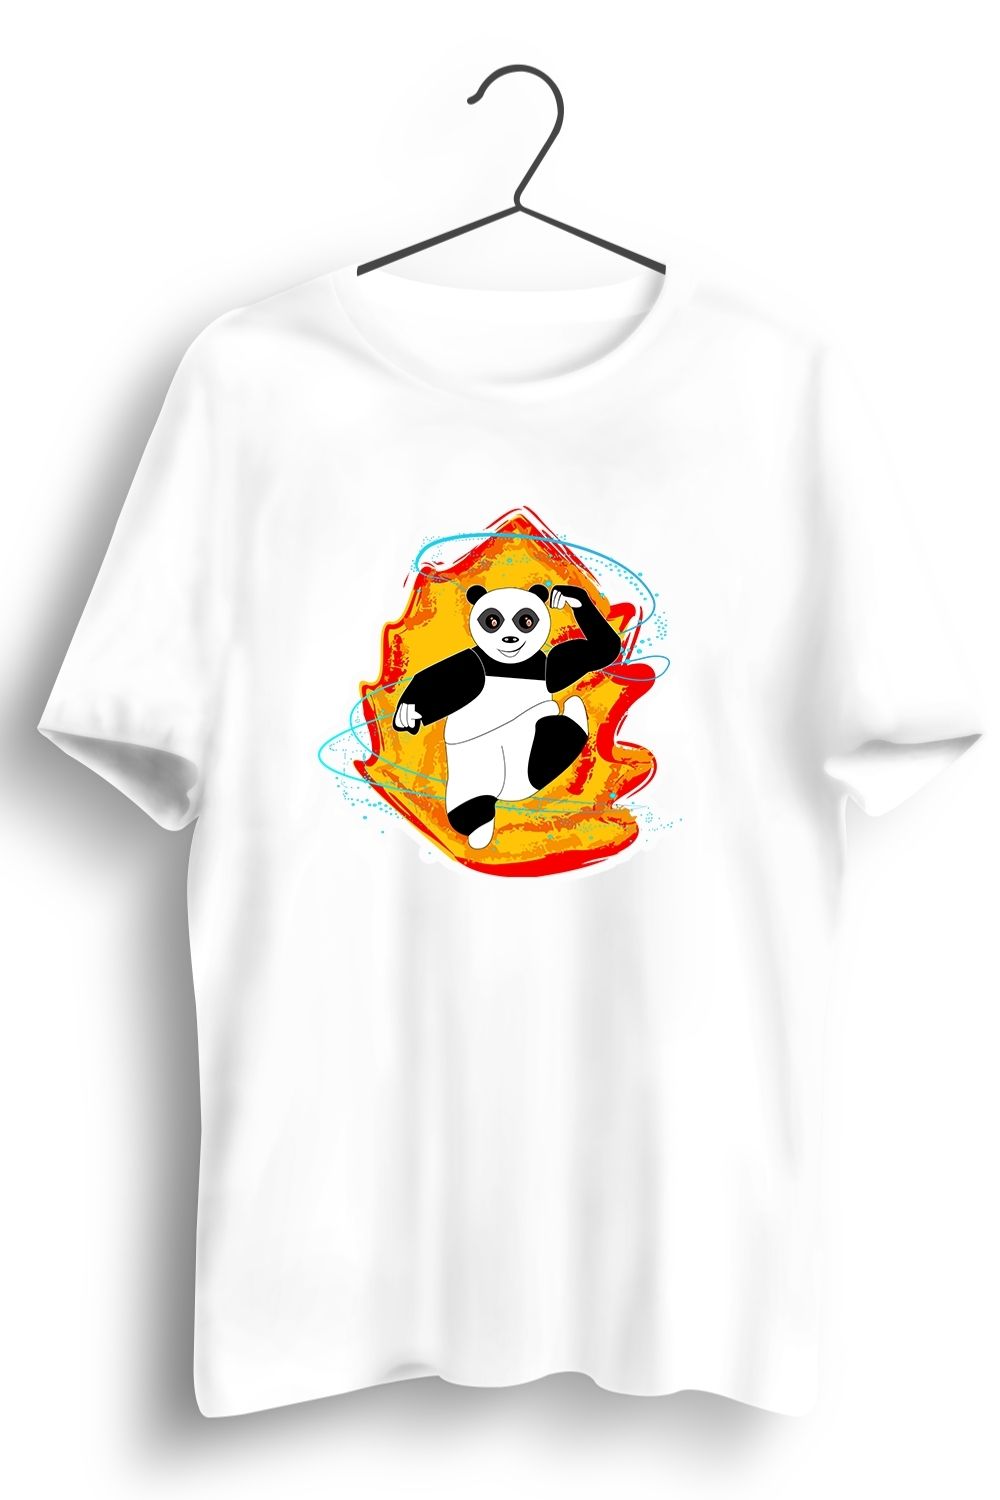 Panda On Fire Graphic Printed White Tshirt